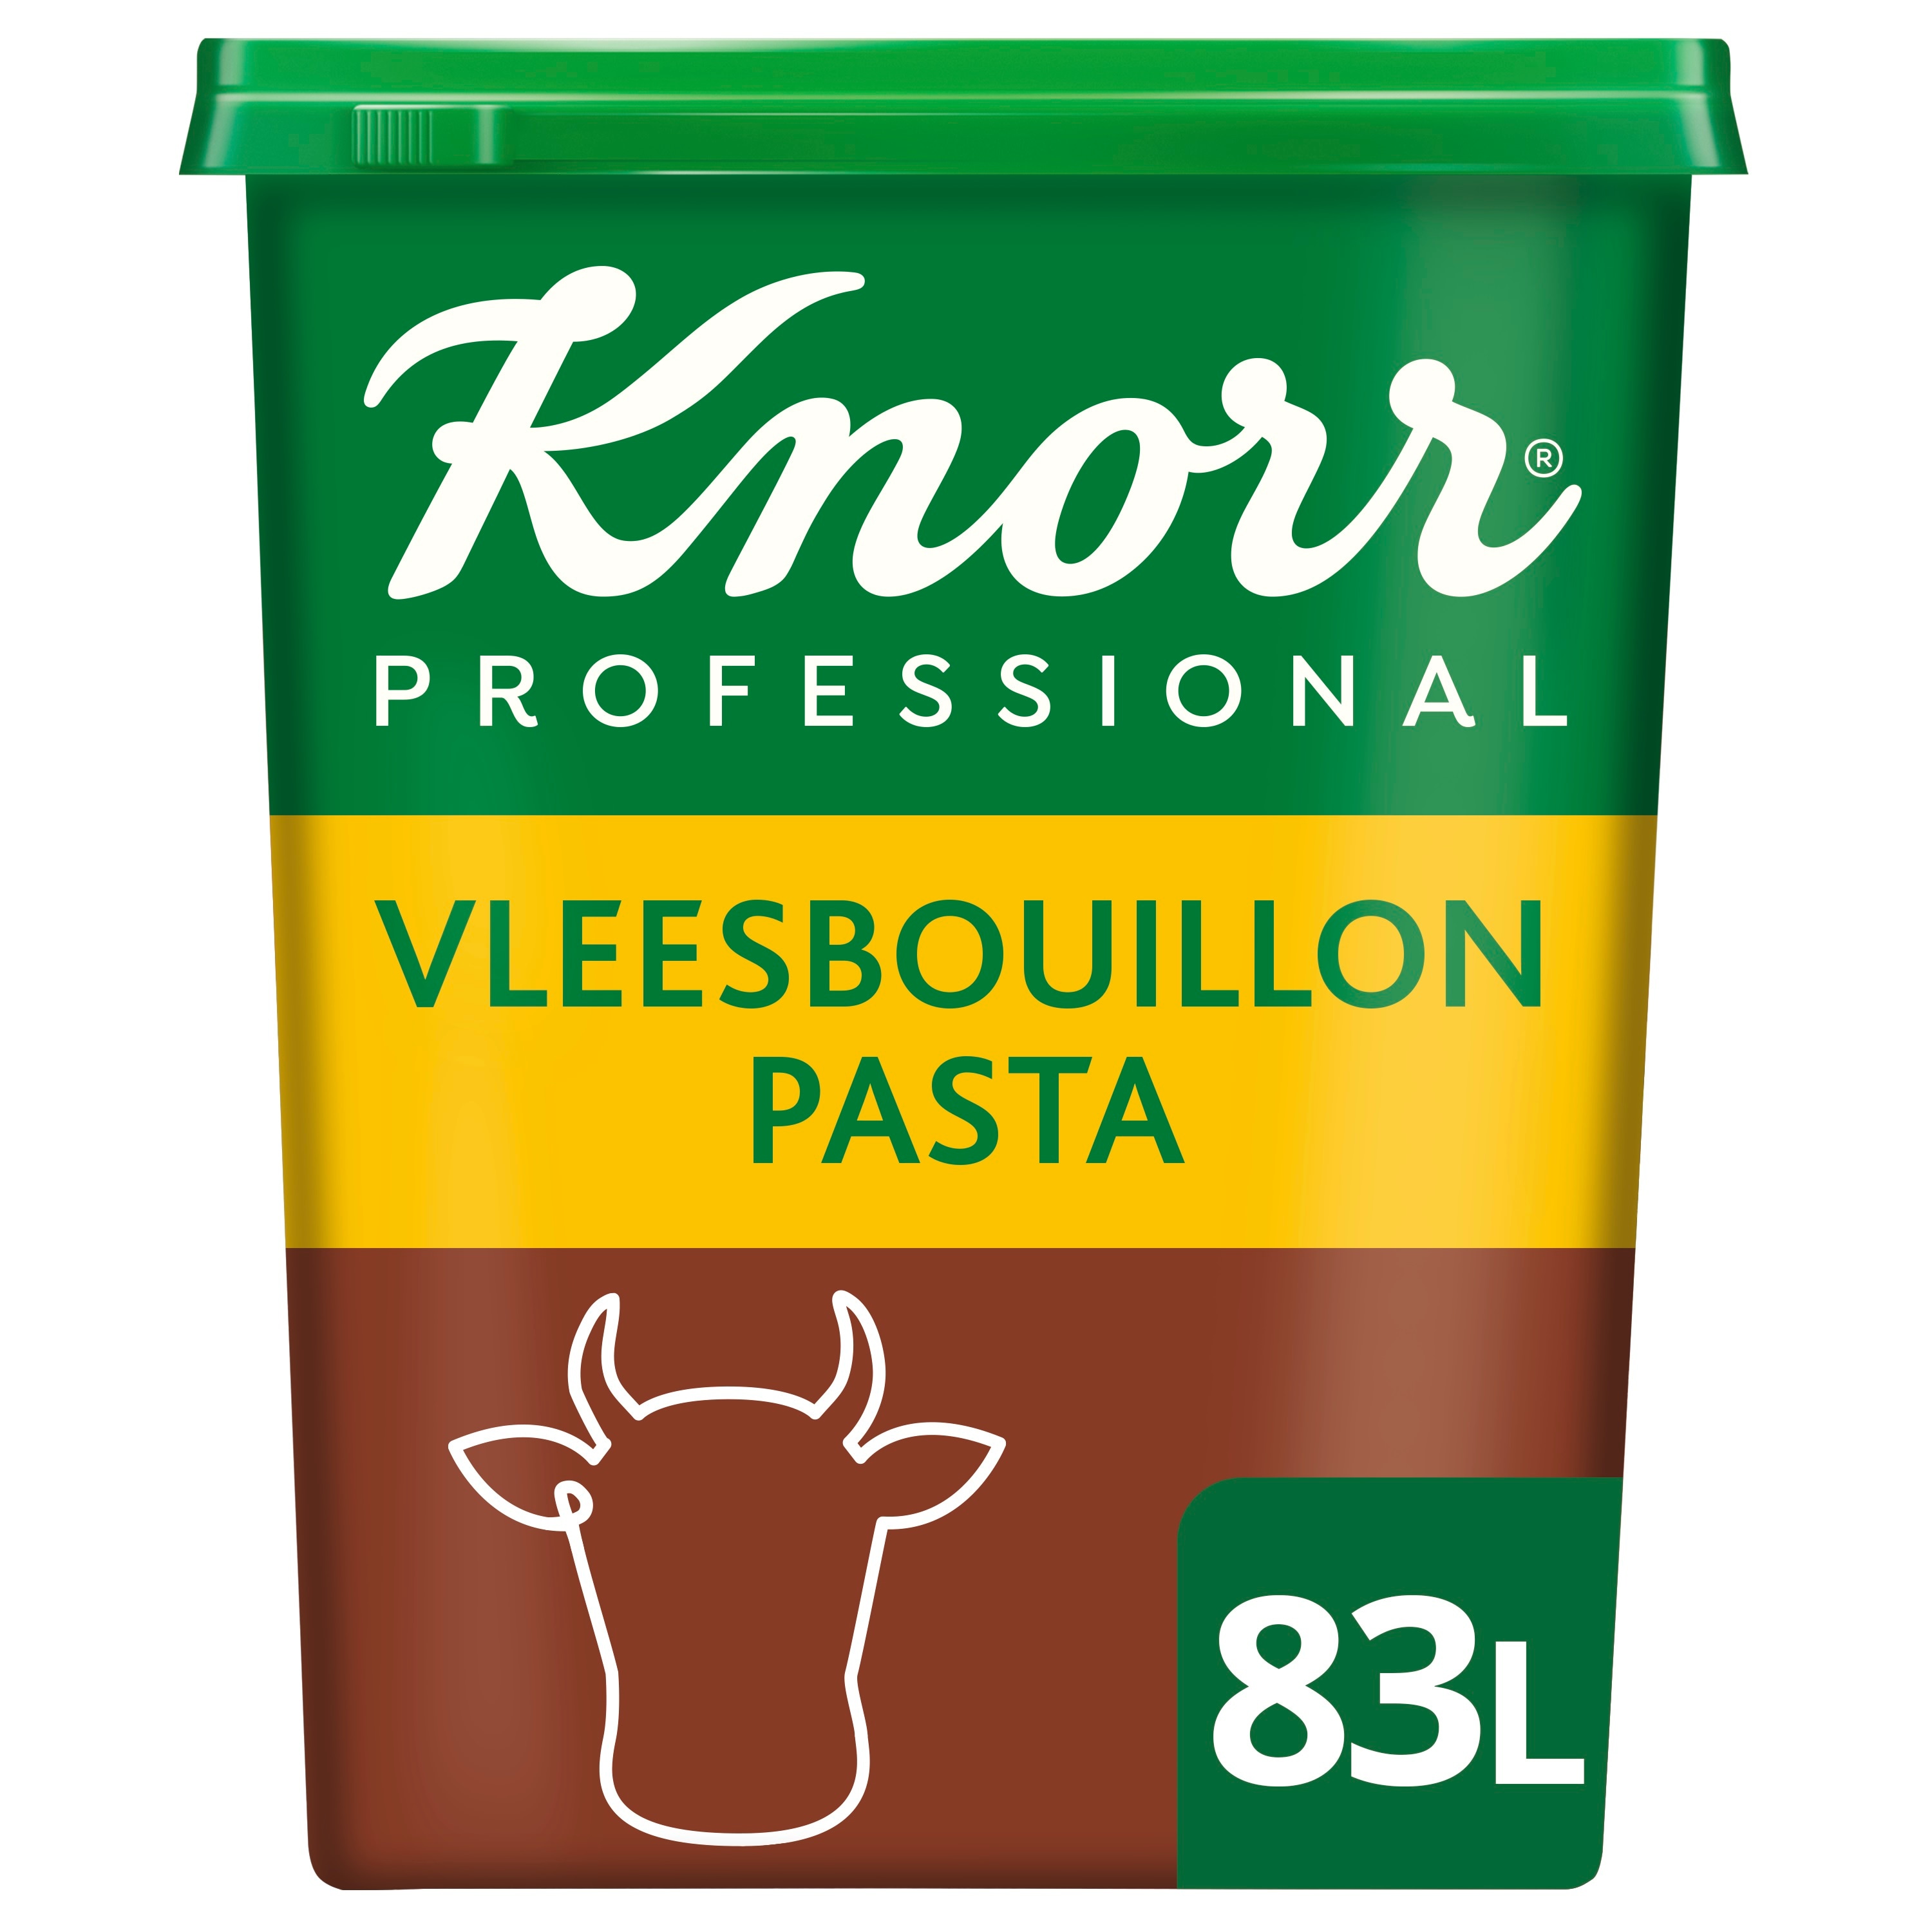 Knorr Vleesbouillon Pasta opbrengst 83L - 